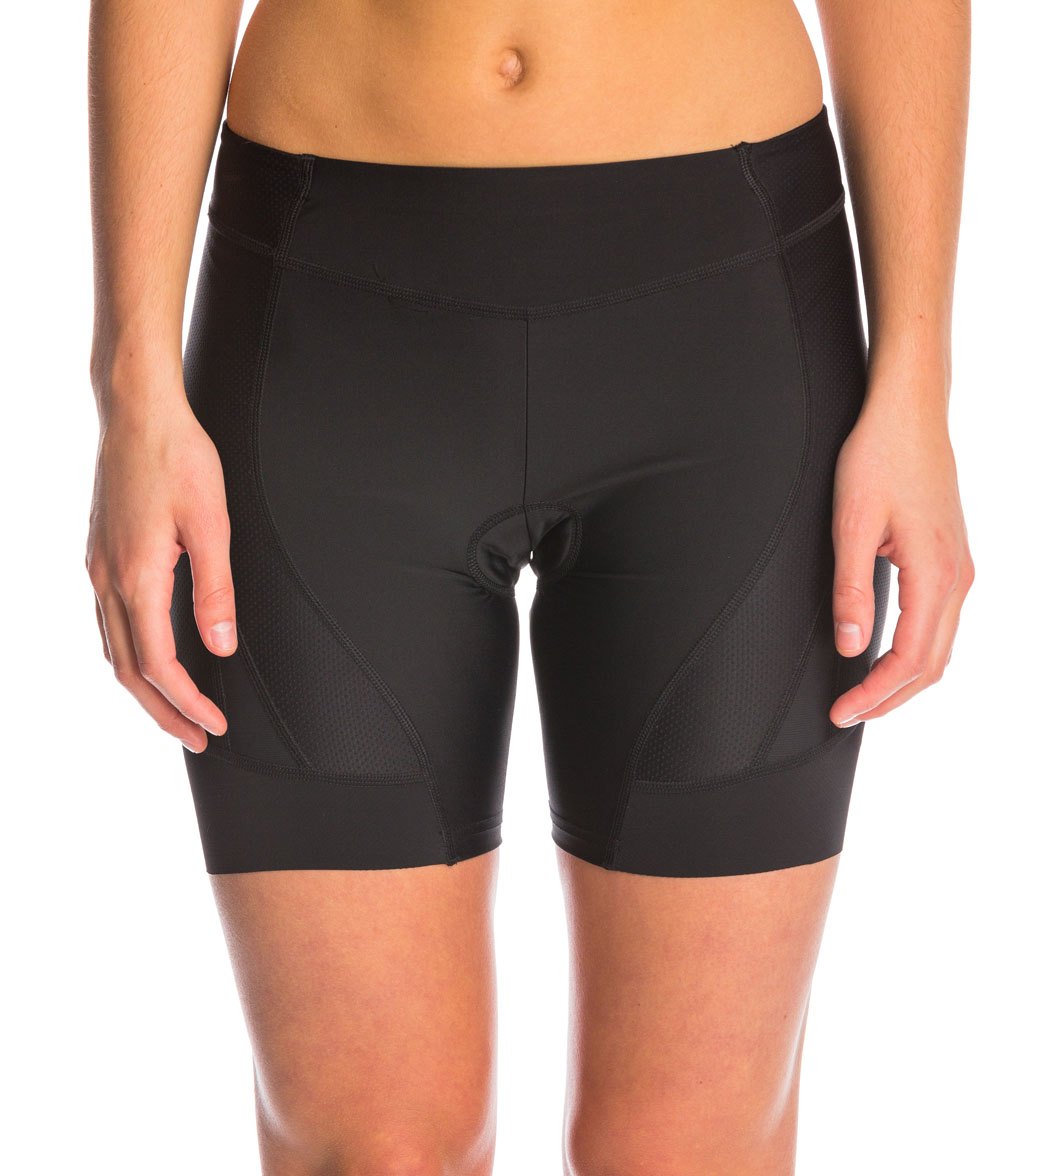 sugoi cycling shorts women's